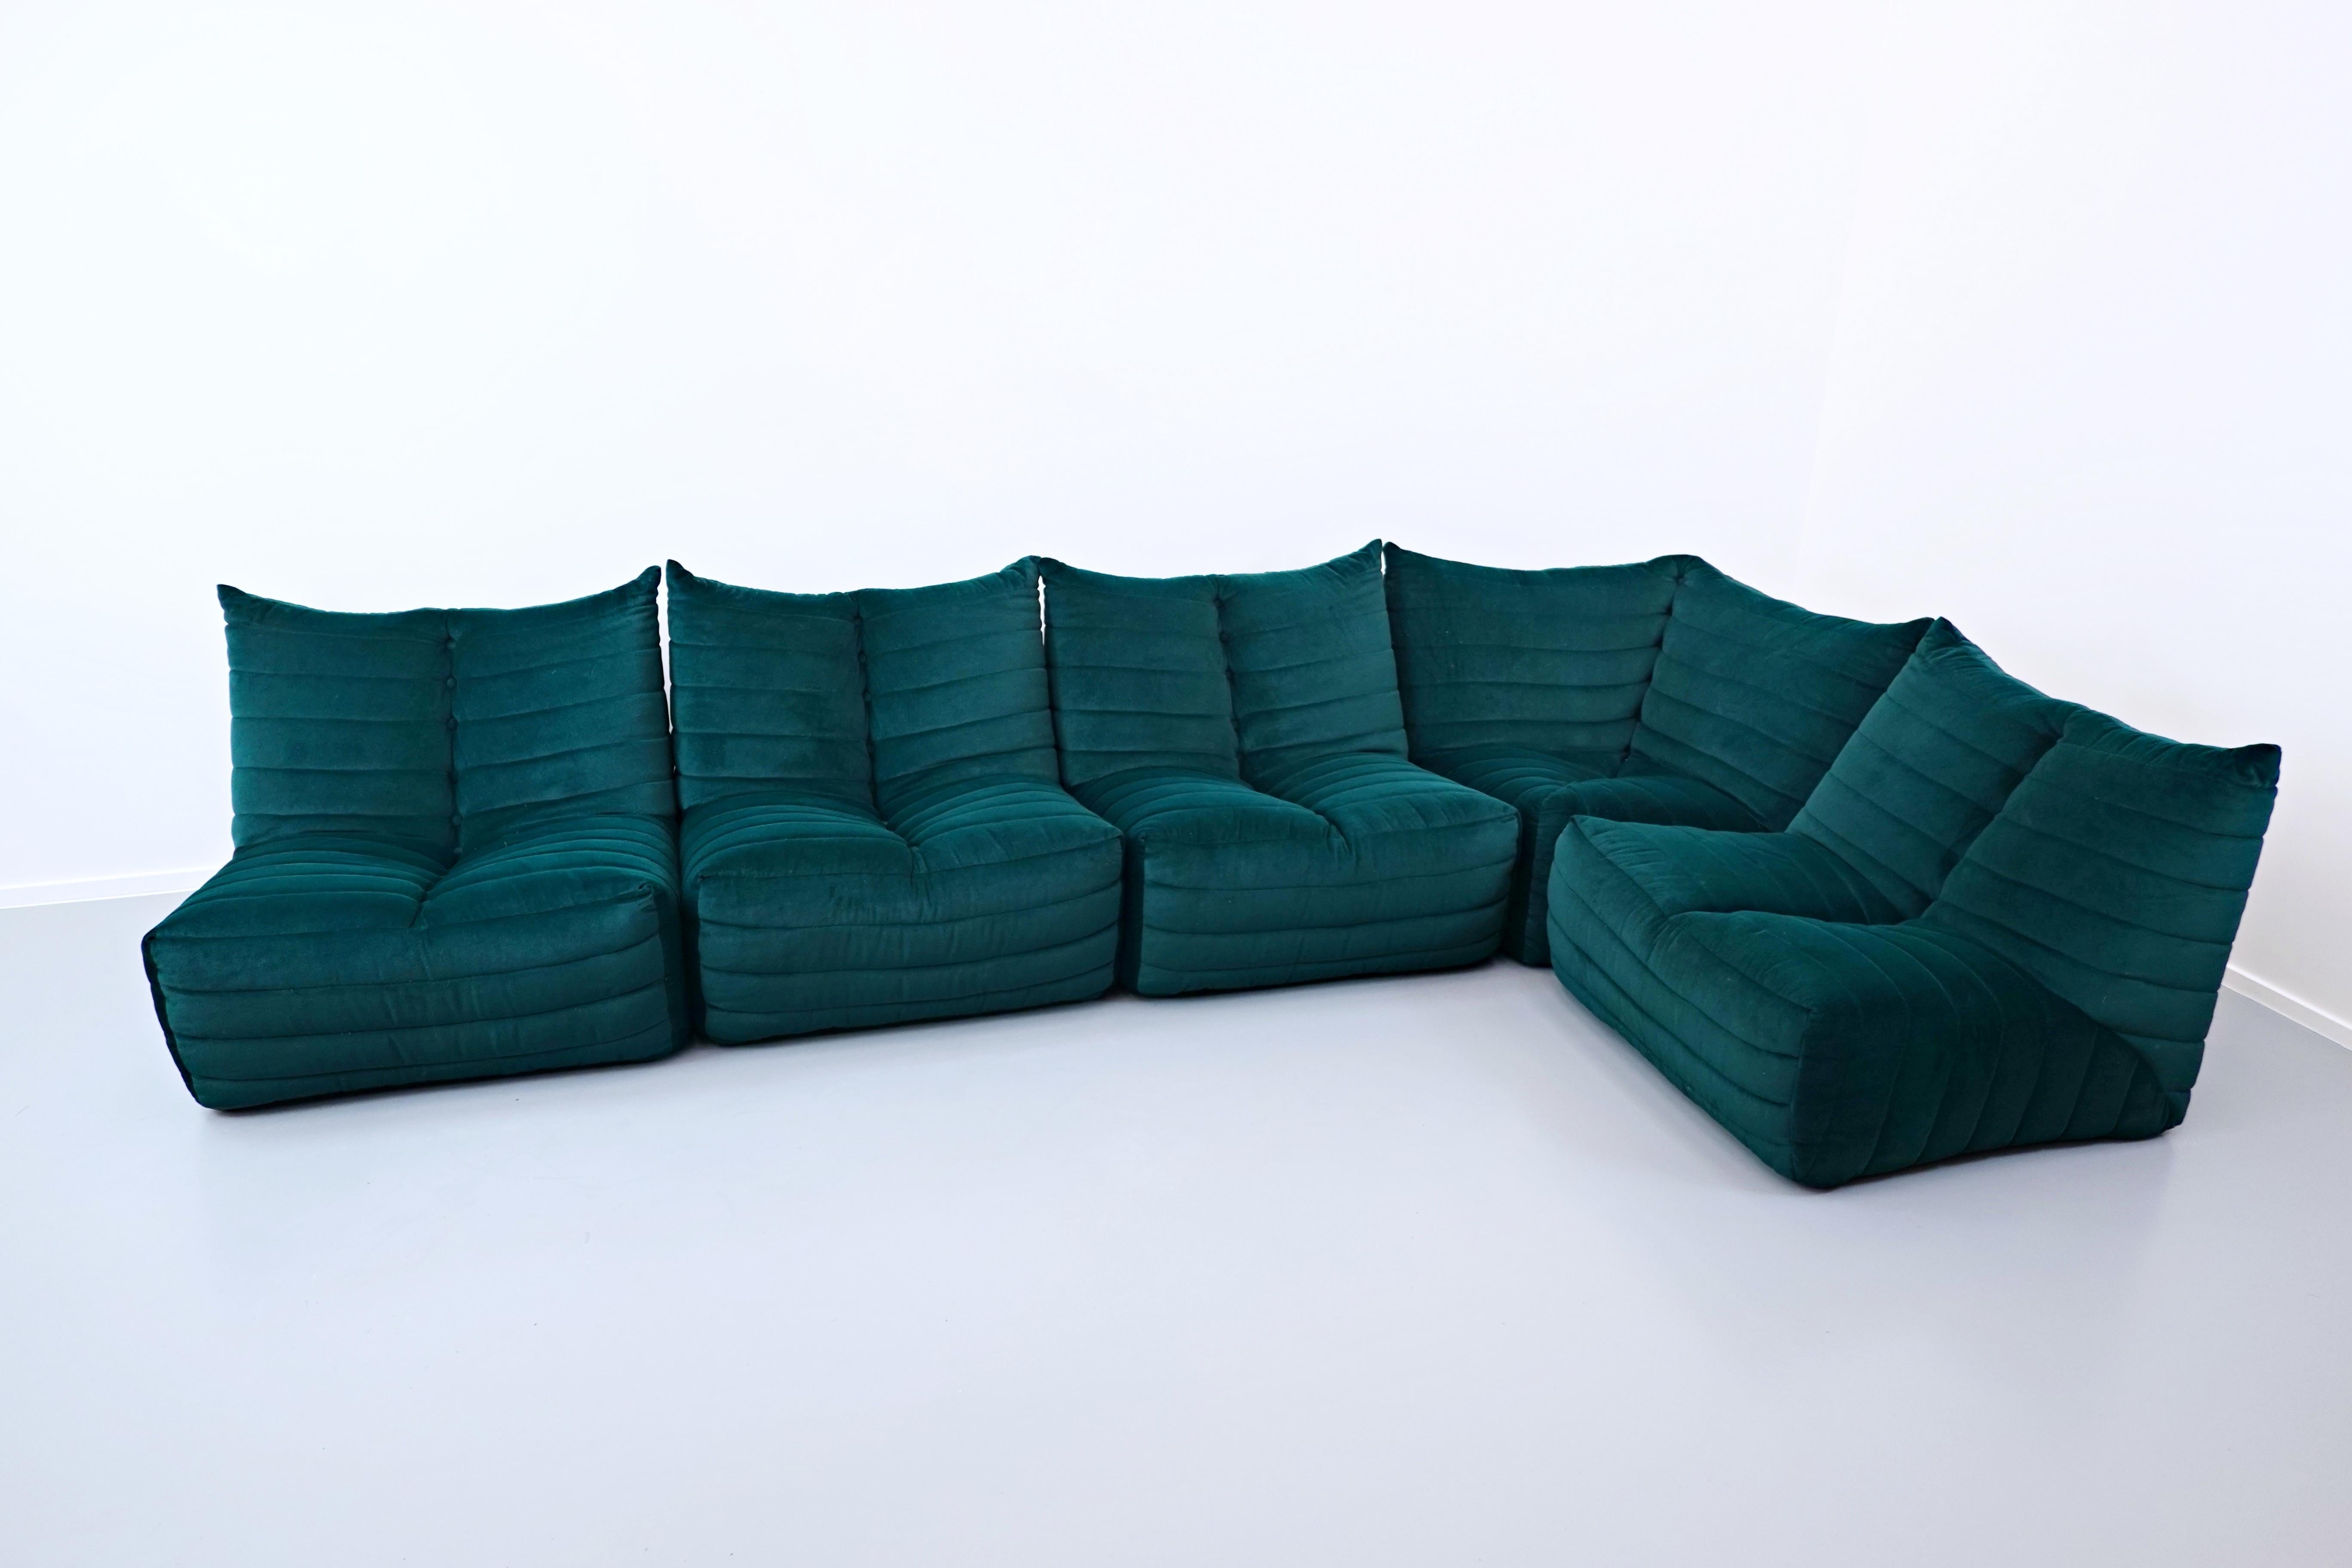 seven salotti sofa